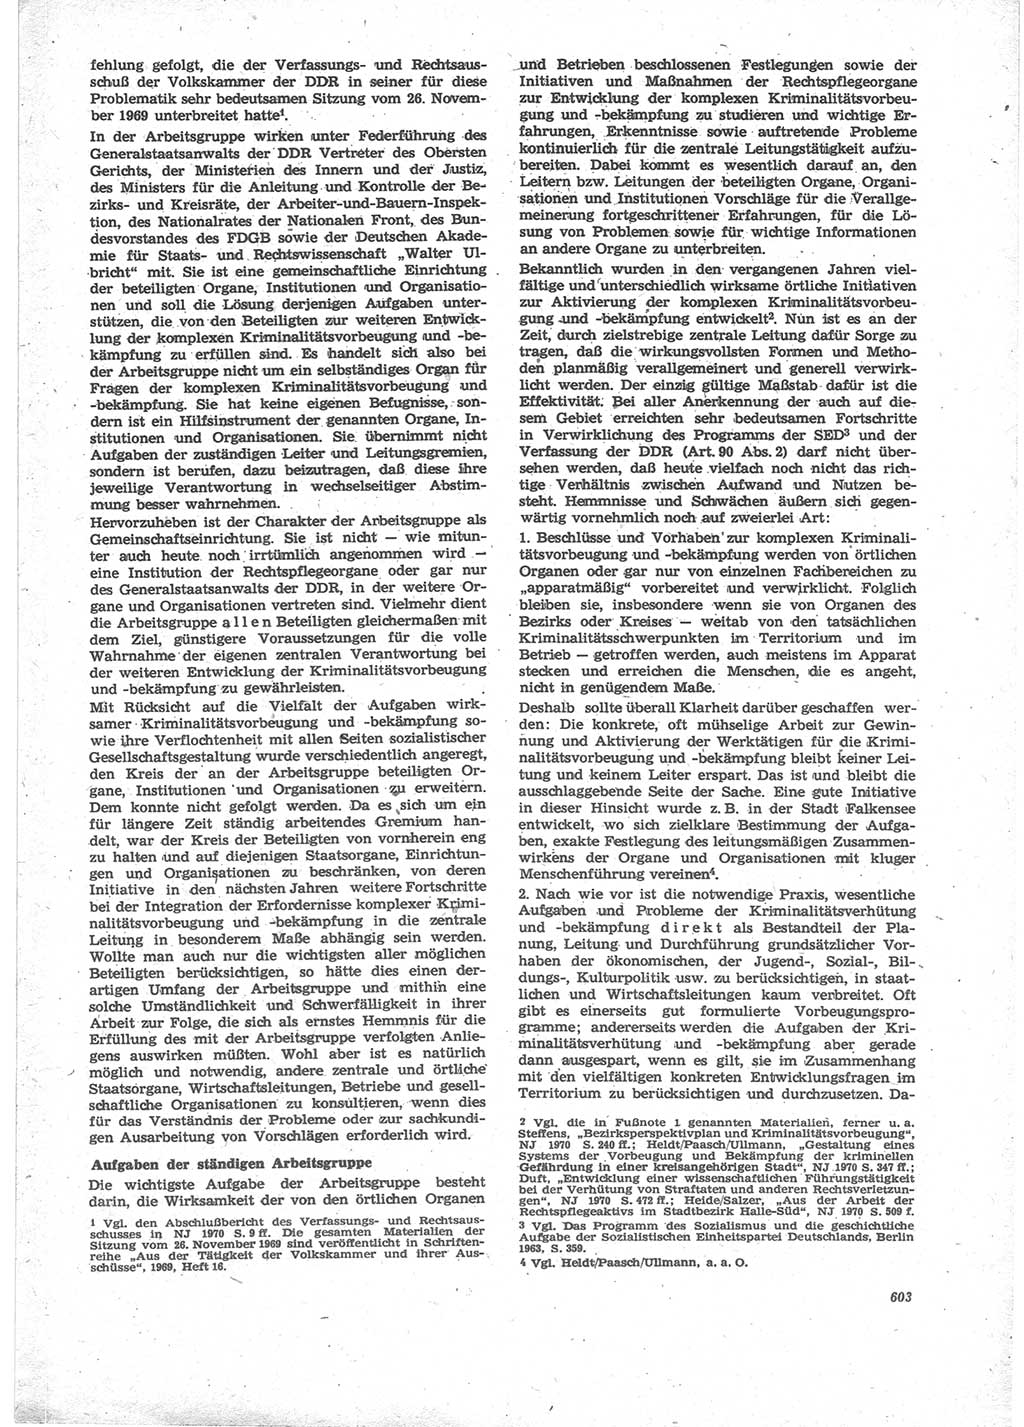 Neue Justiz (NJ), Zeitschrift für Recht und Rechtswissenschaft [Deutsche Demokratische Republik (DDR)], 24. Jahrgang 1970, Seite 603 (NJ DDR 1970, S. 603)